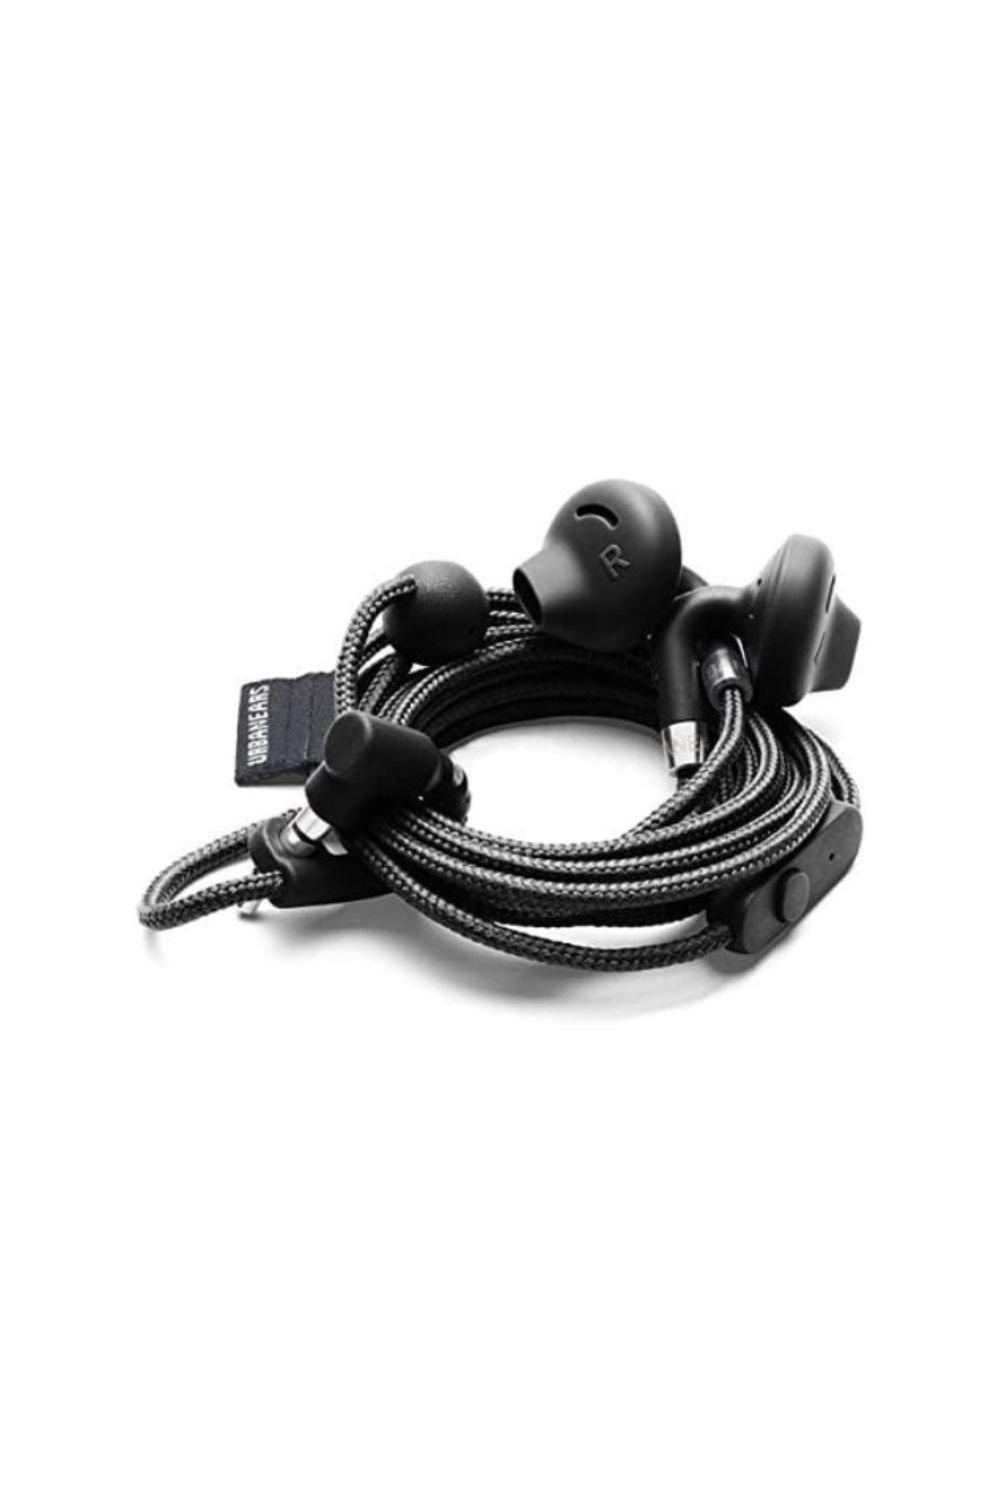 Urbanears Headphones in Black